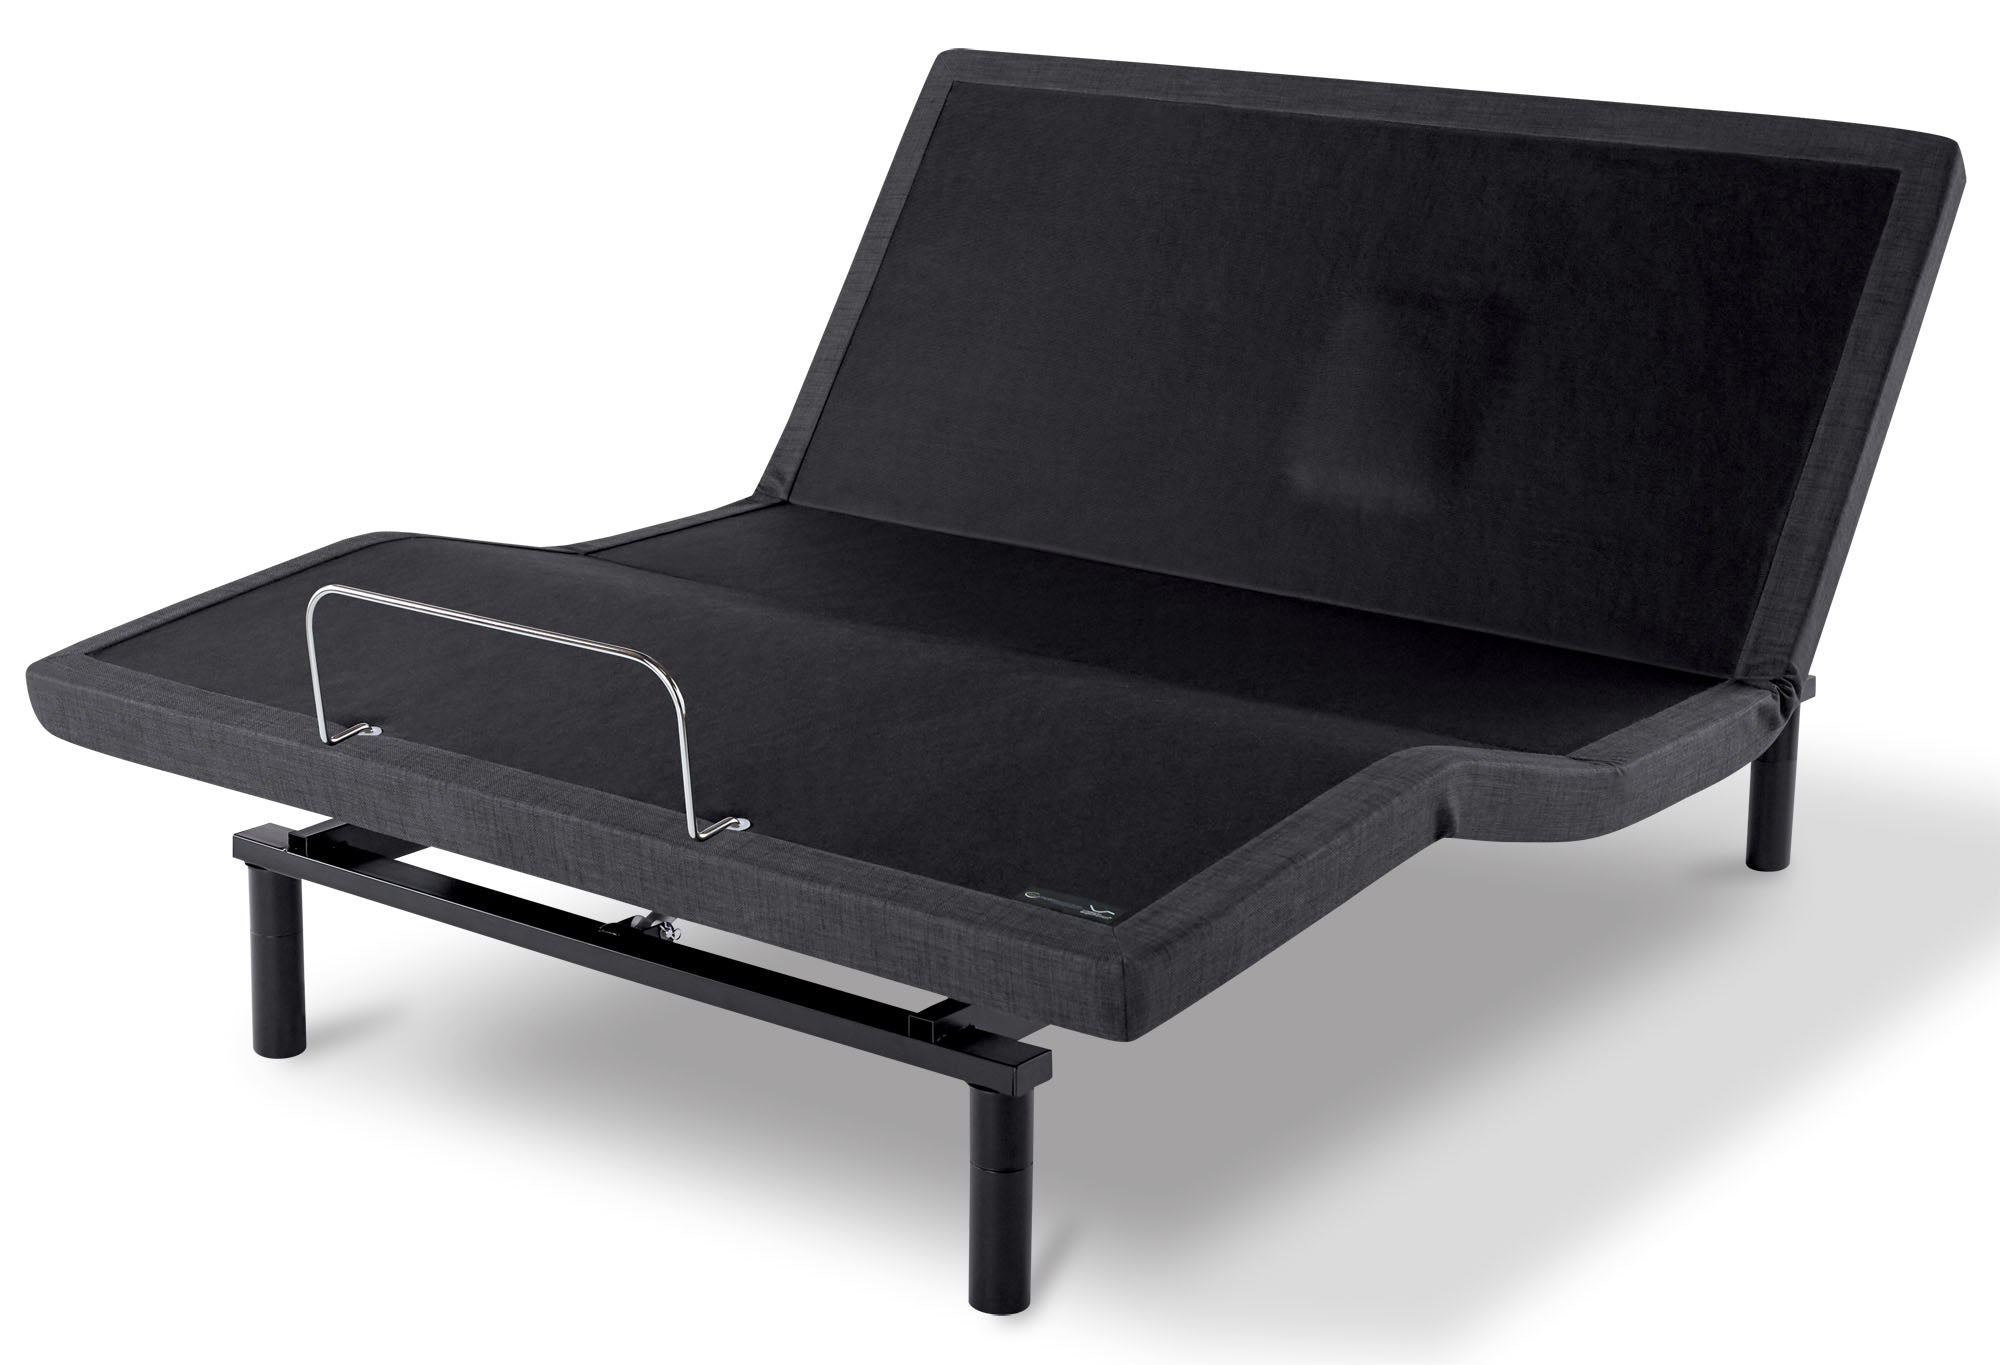 Serta Motion Essentials V Ergomotion Adjustable Base - MJM Furniture